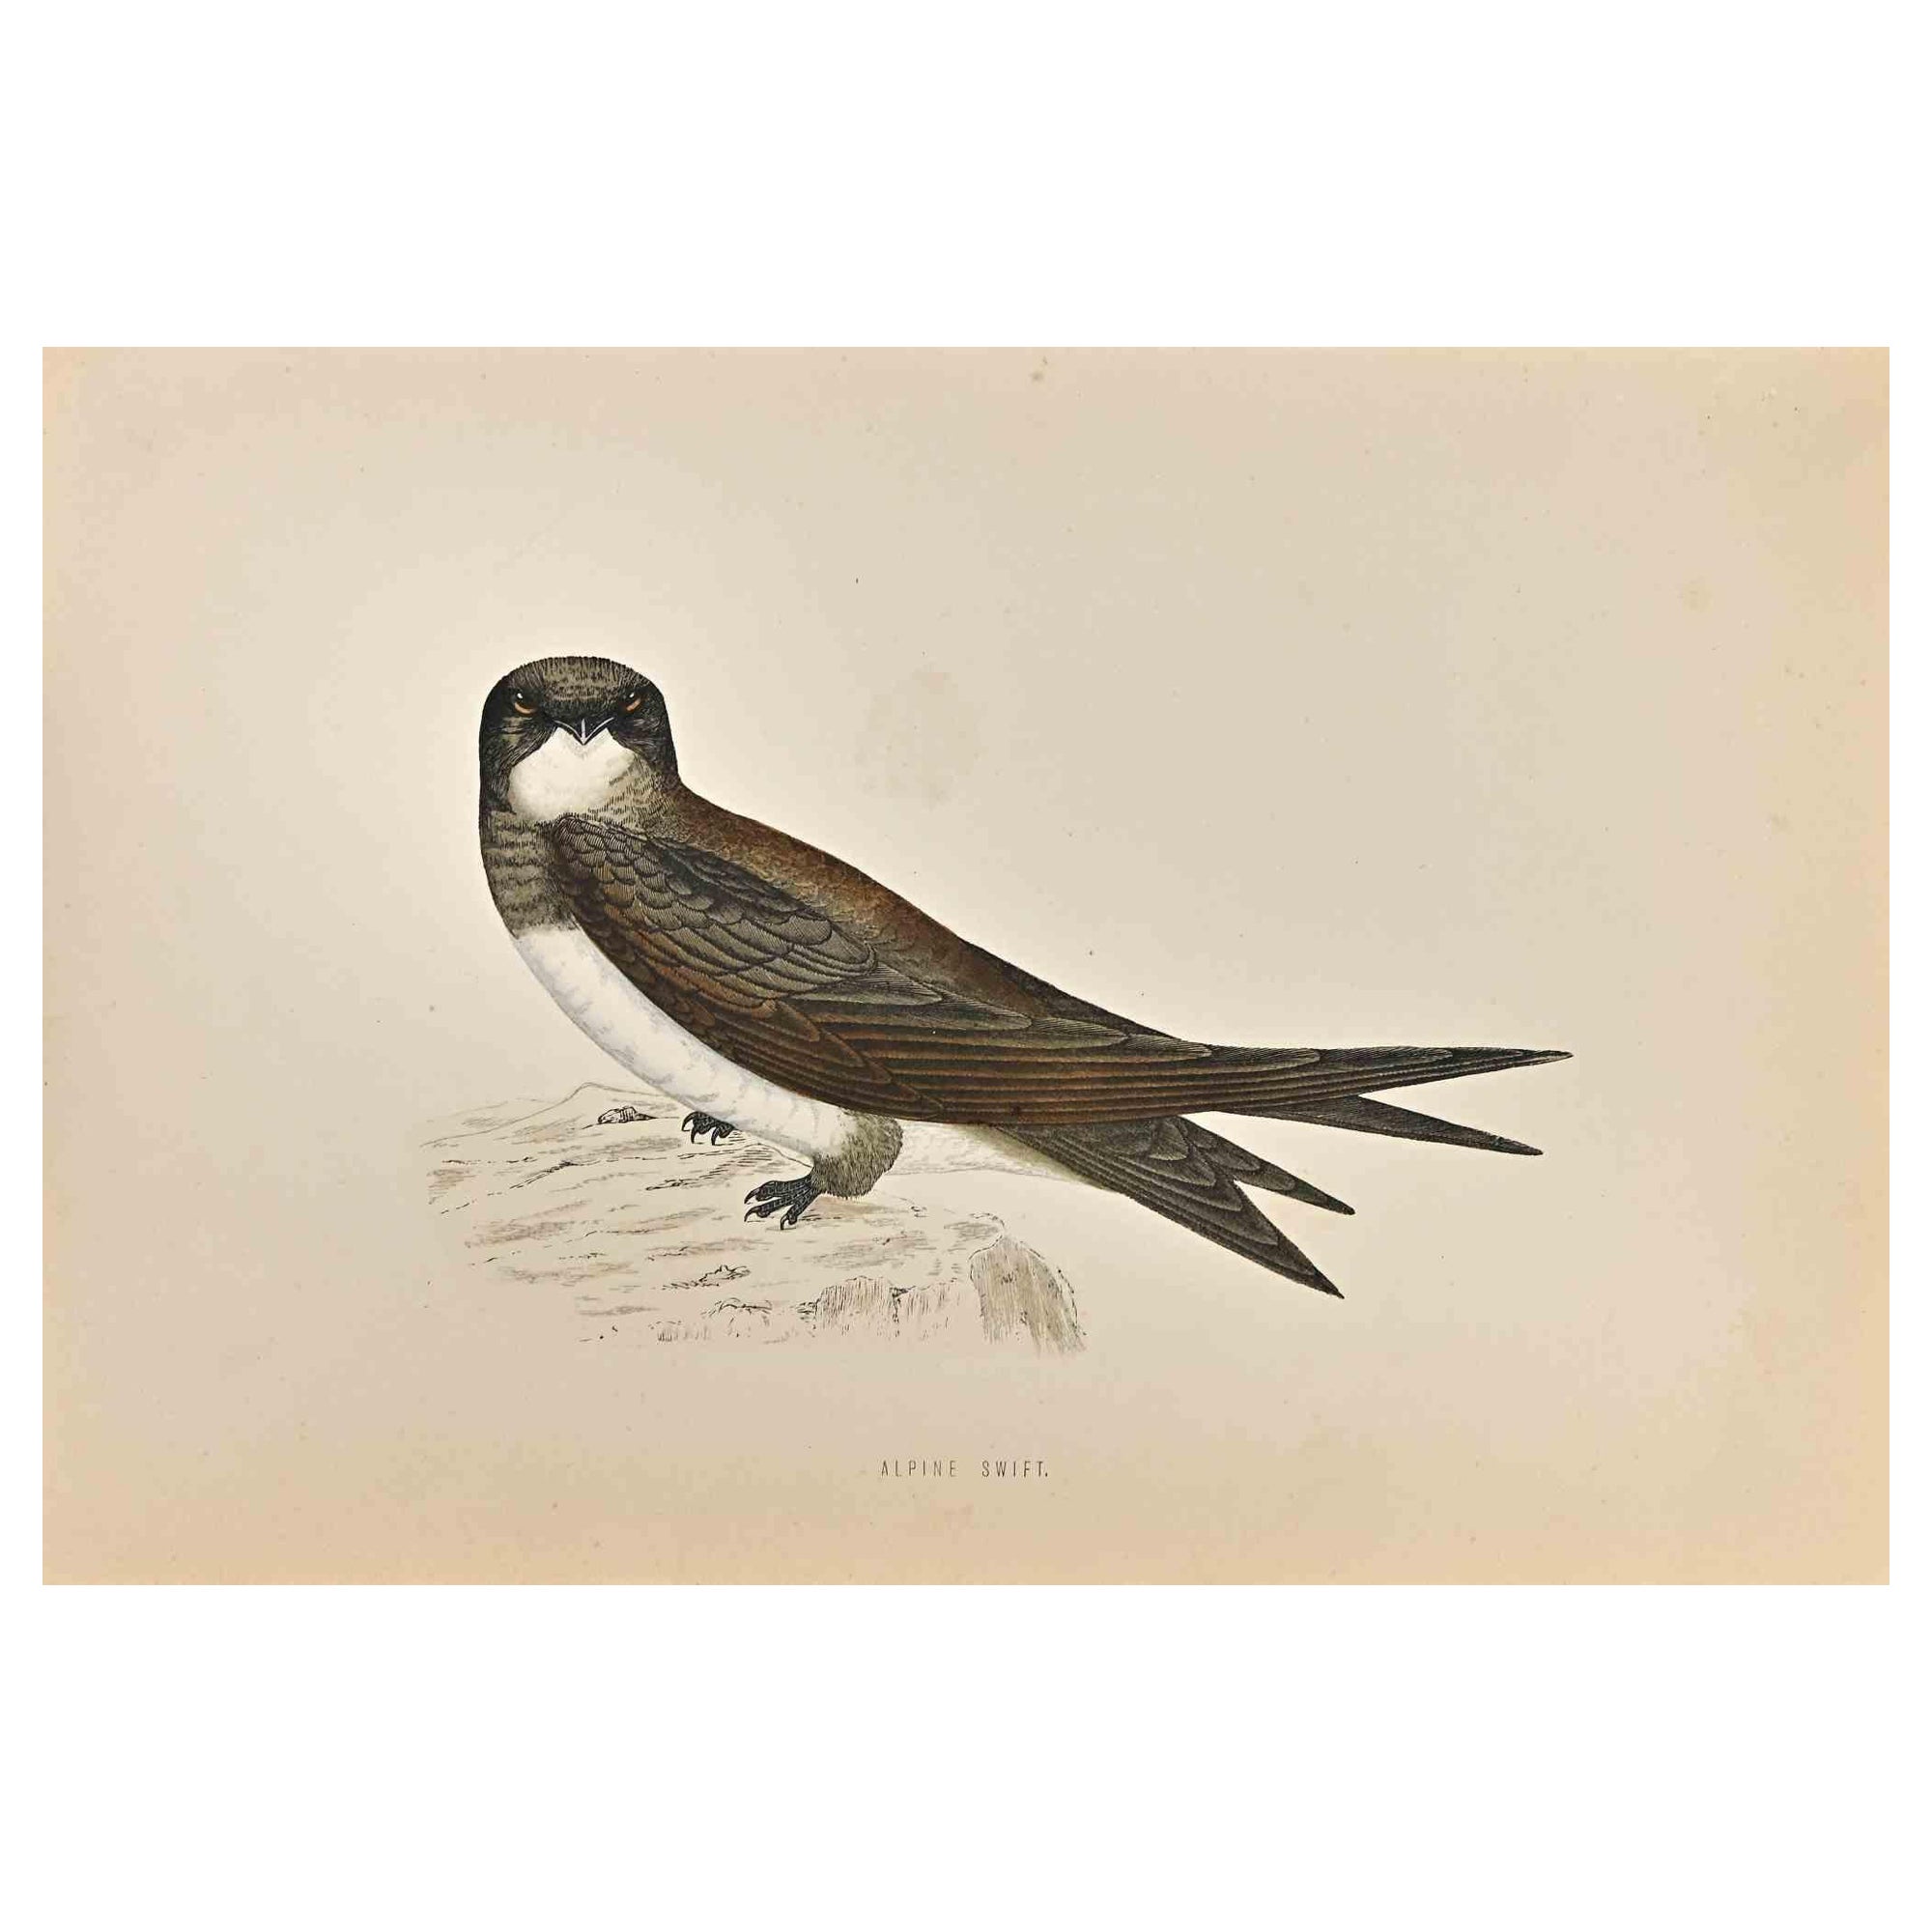 Alpine Swift est une œuvre d'art moderne réalisée en 1870 par l'artiste britannique Alexander Francis Lydon (1836-1917) . 

Gravure sur bois sur papier couleur ivoire.

Coloré à la main, publié par Londres, Bell & Sons, 1870.  

Le nom de l'oiseau